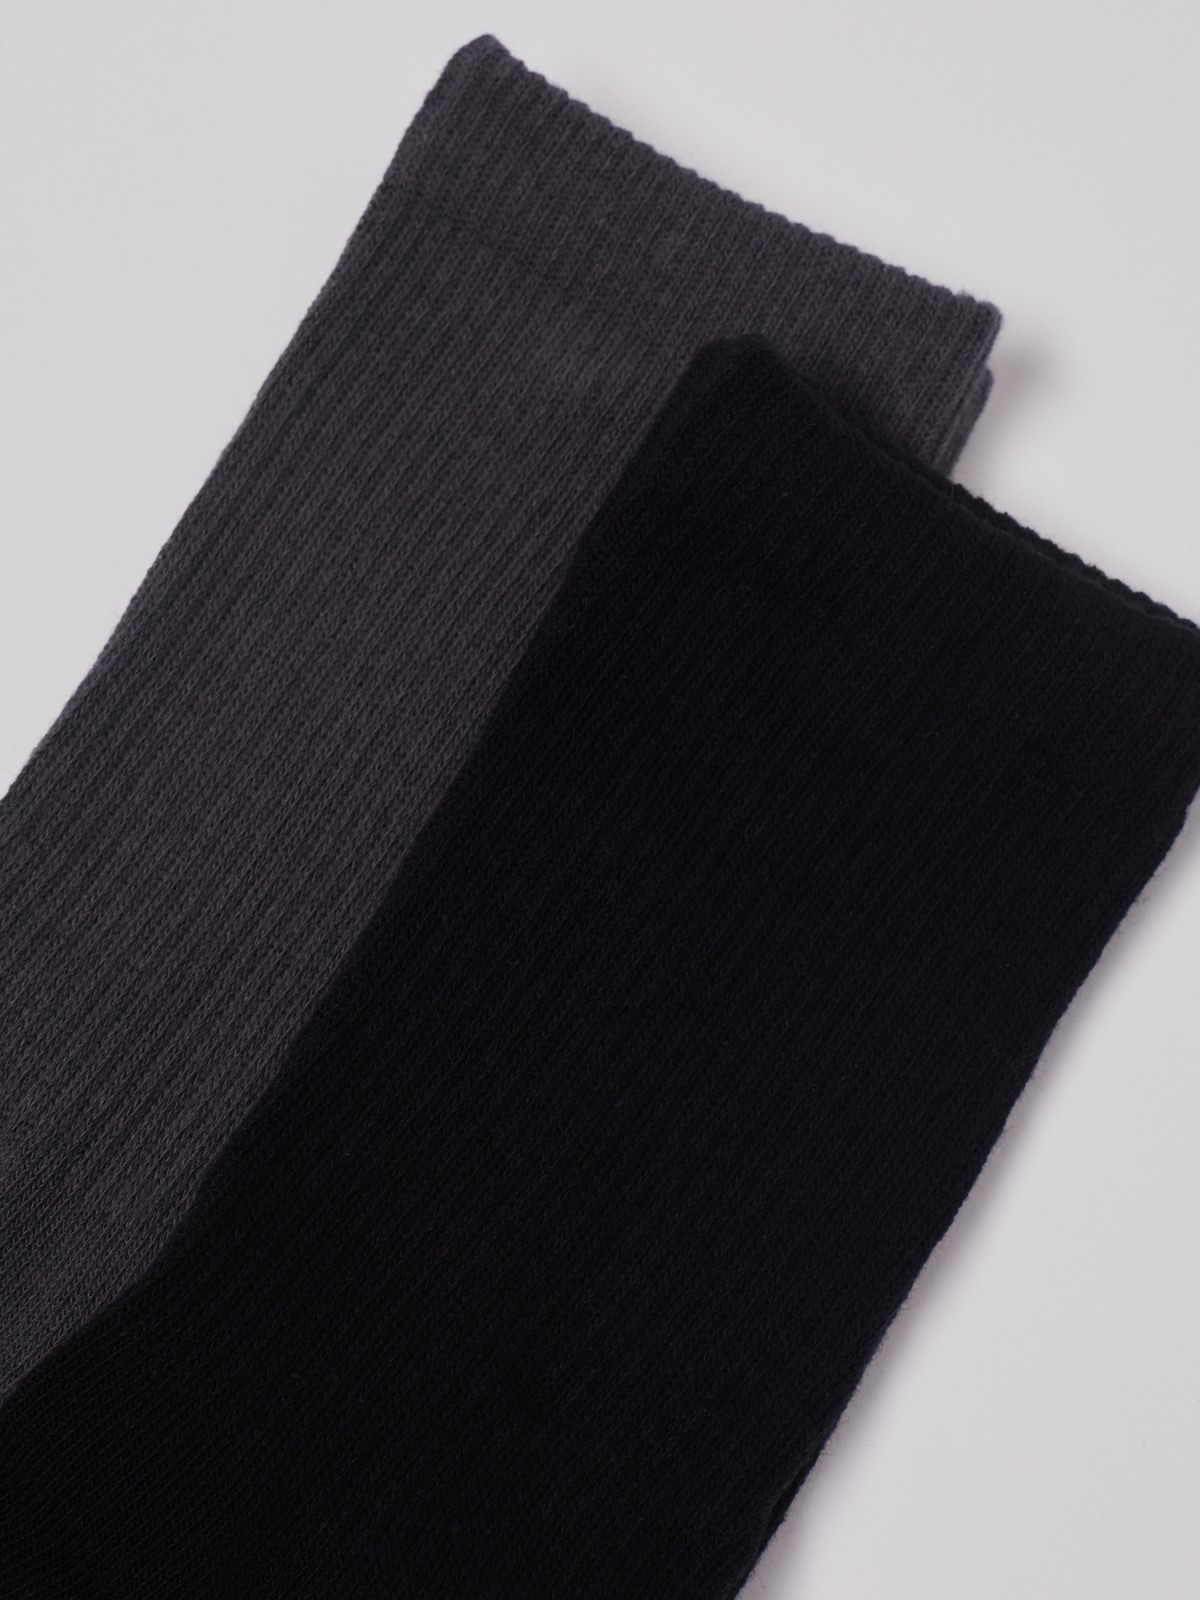 Набор высоких носков (2 пары в комплекте) zolla 01233995P015, цвет черный, размер 25-27 - фото 2